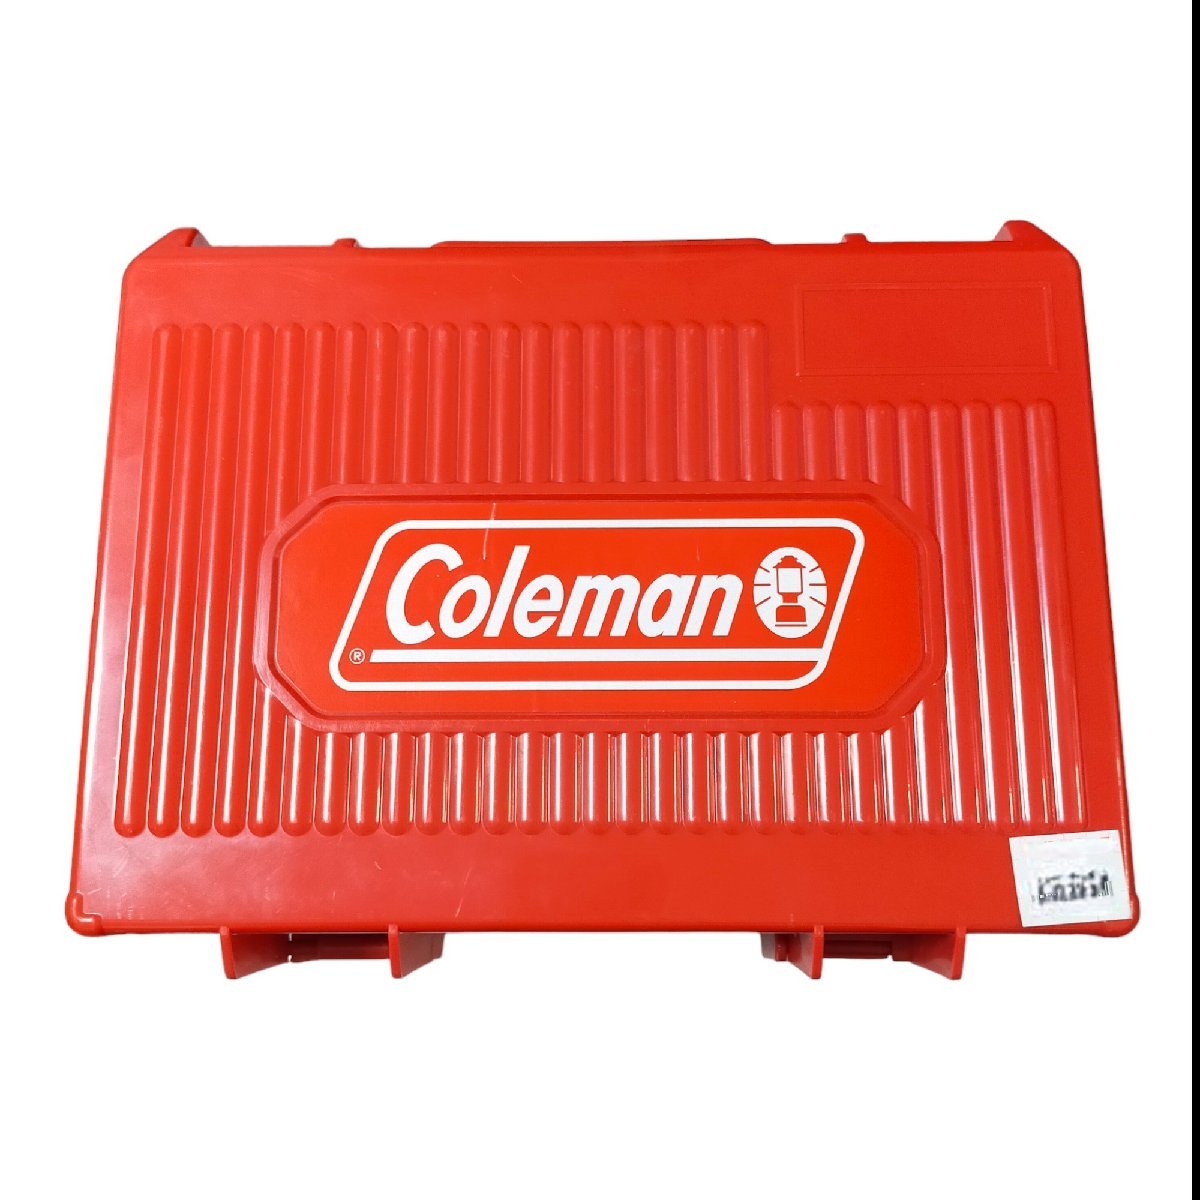 ◆未使用・展示品◆Coleman コールマン コールマン シングル バーナー ガスストーブ 120A 2000037239 レッド R53100NF_画像3